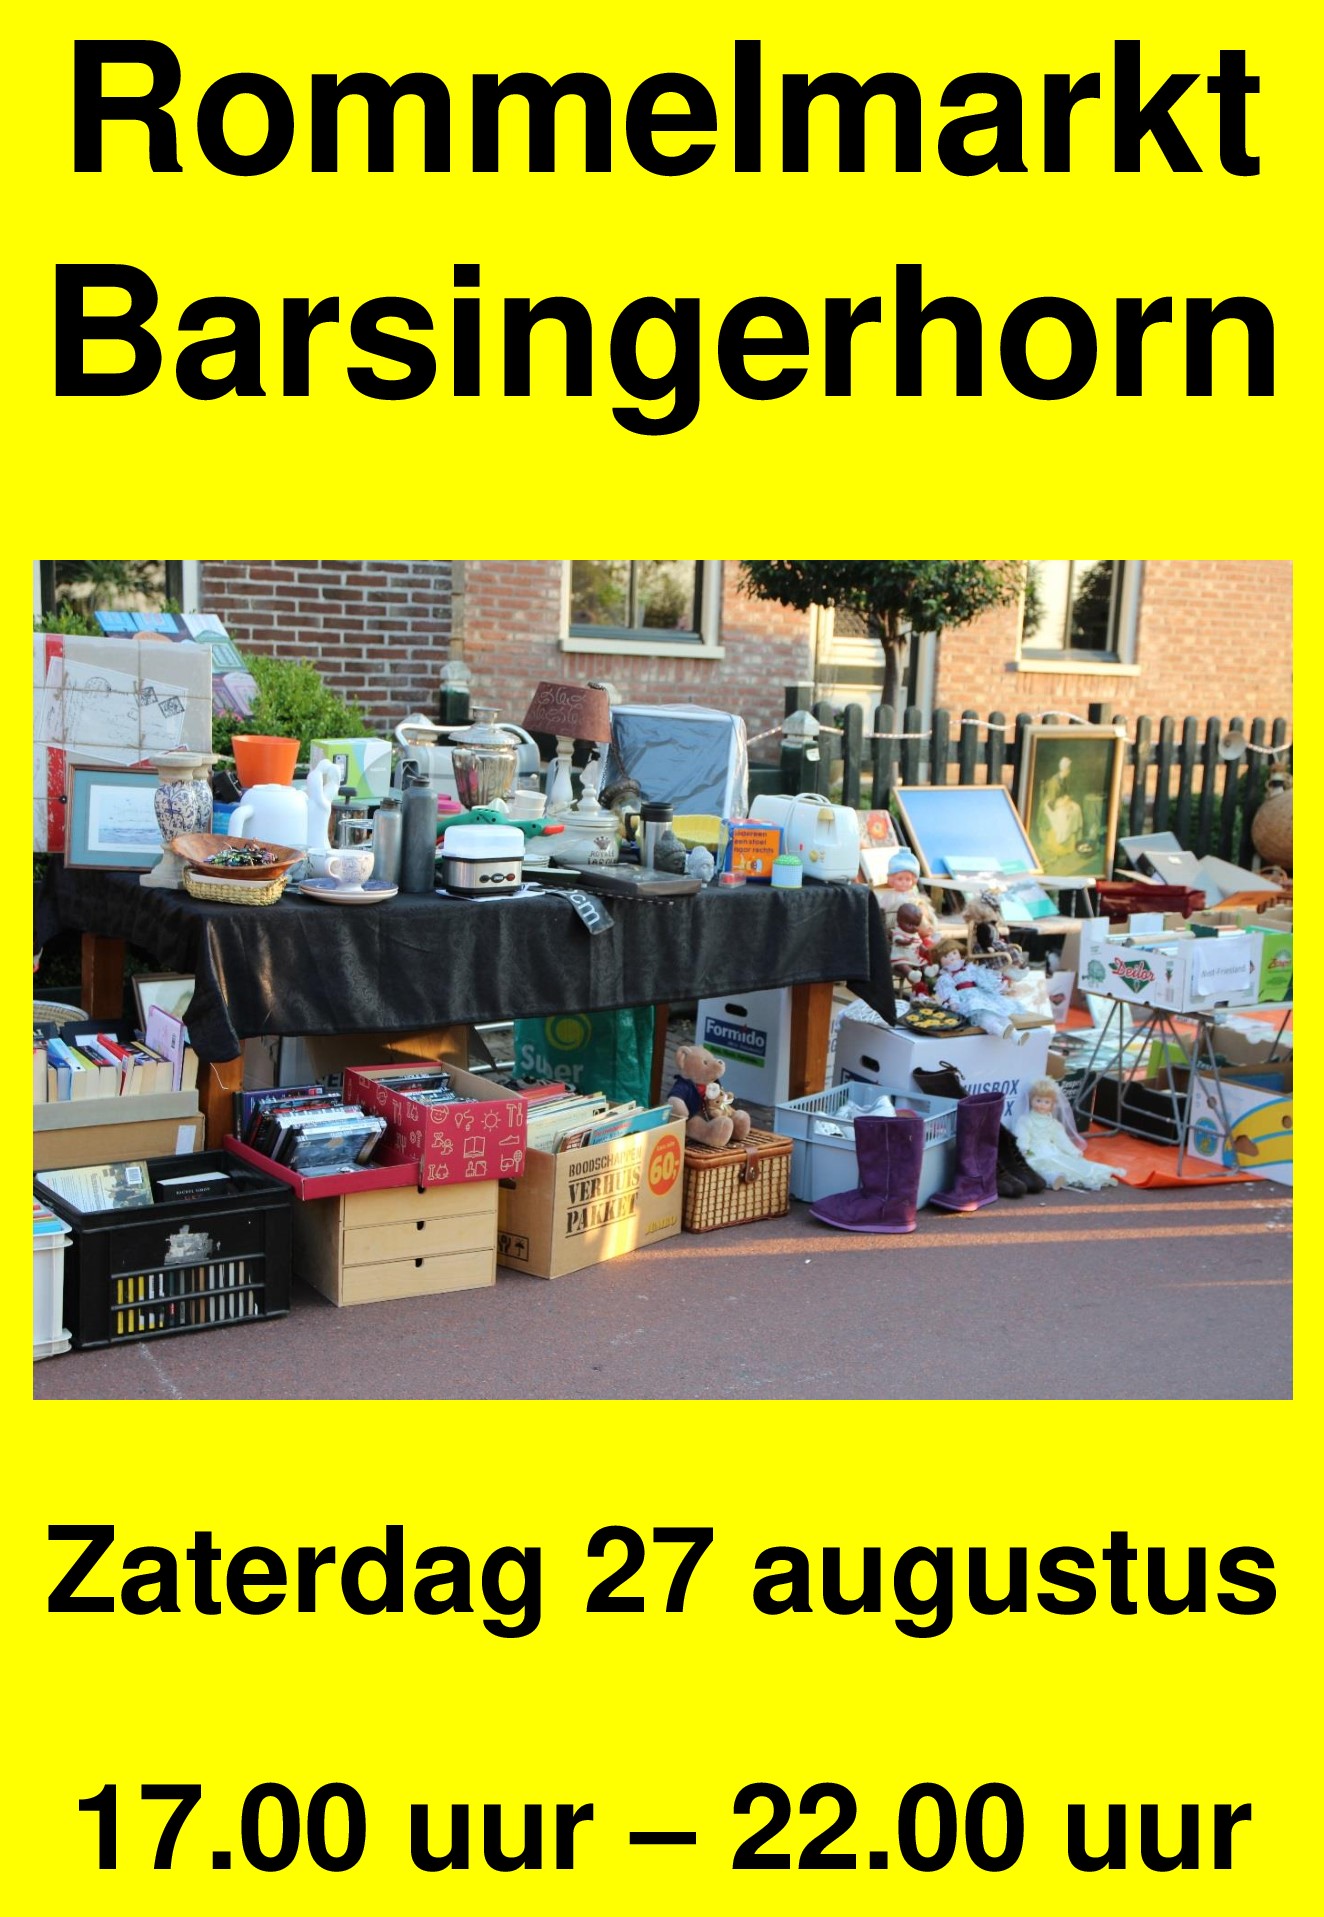 Rommelmarkt Barsingerhorn22goed